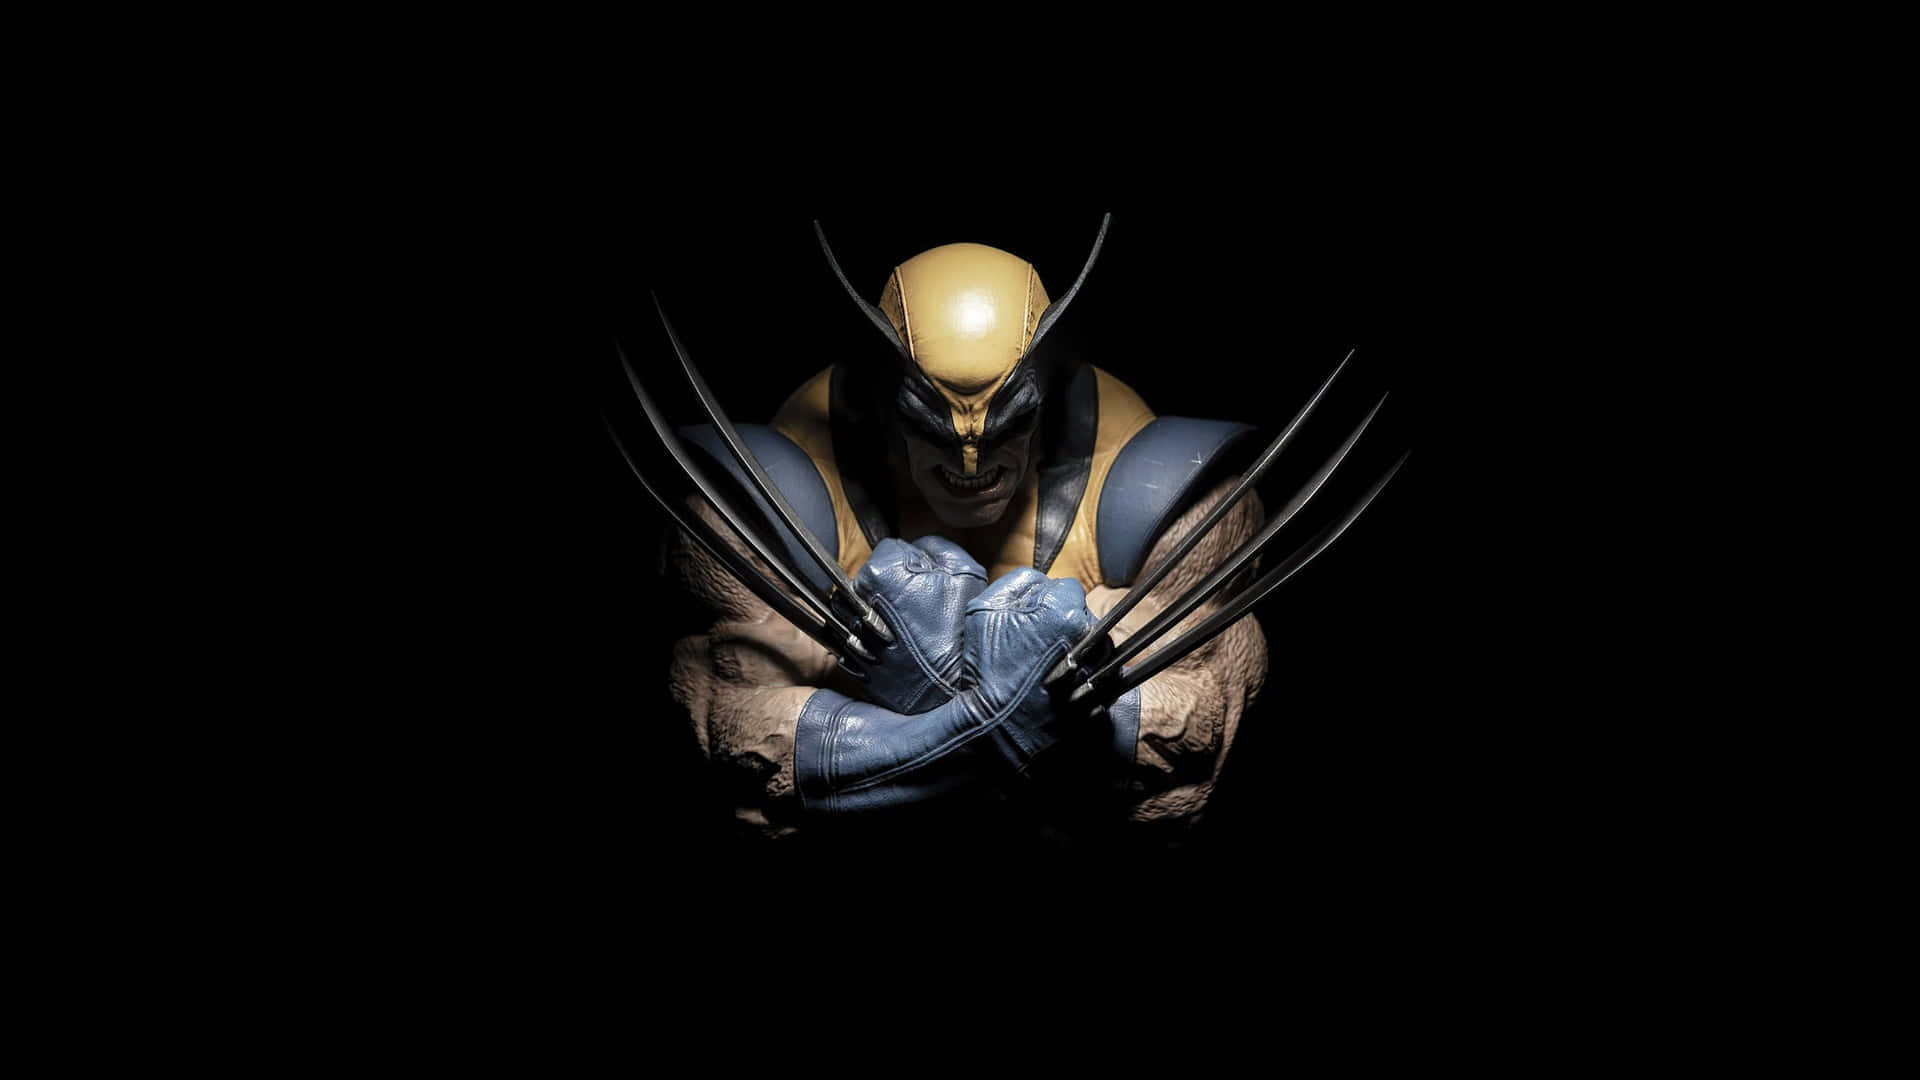 Deradamantium-bewehrte Superheld Von Marvel, Wolverine